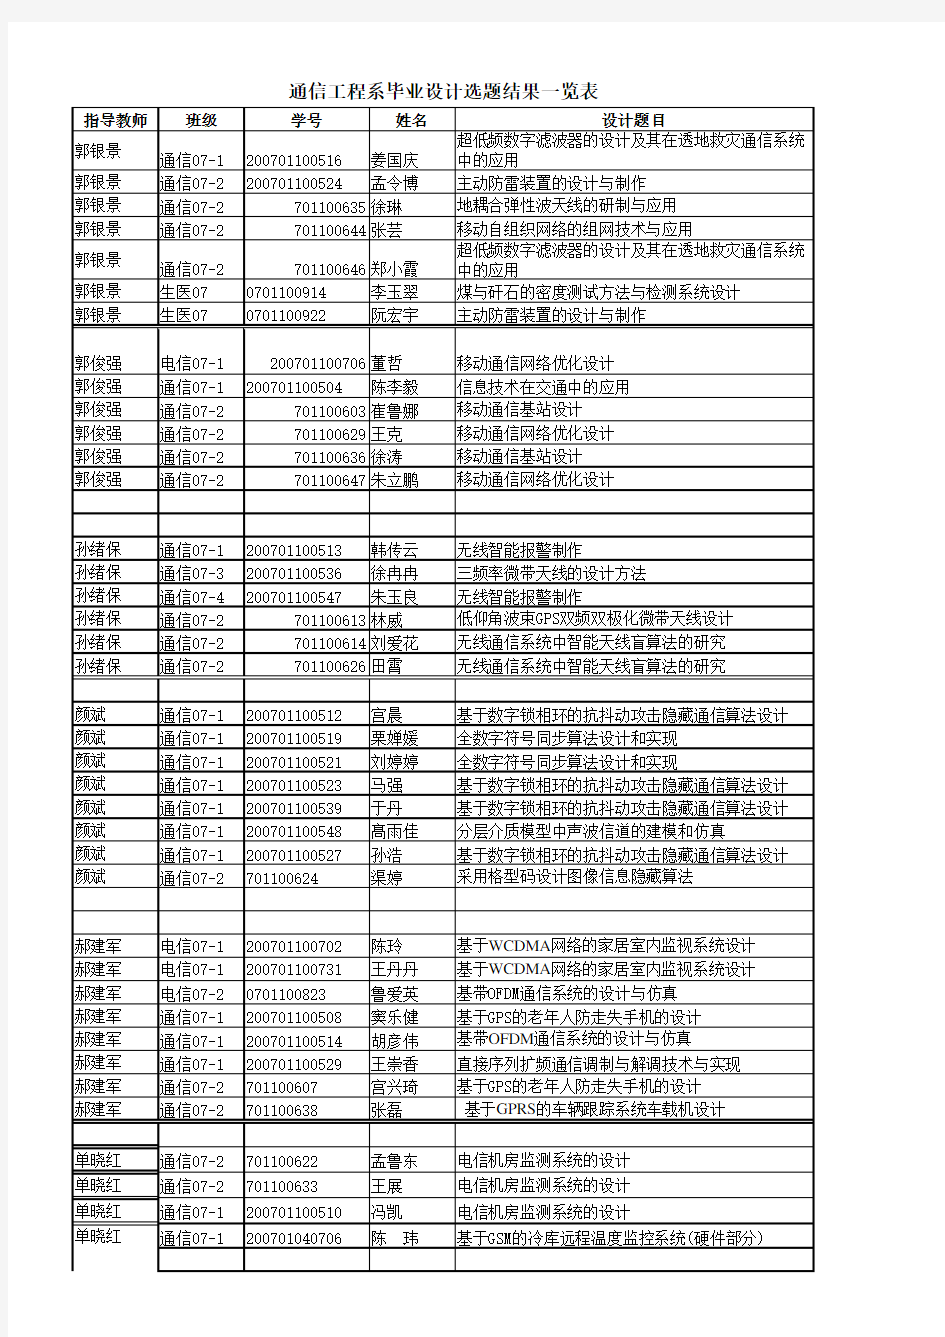 山东科技大学信电学院 2011届毕业设计选题结果一览表(以指导老师为单位汇总)